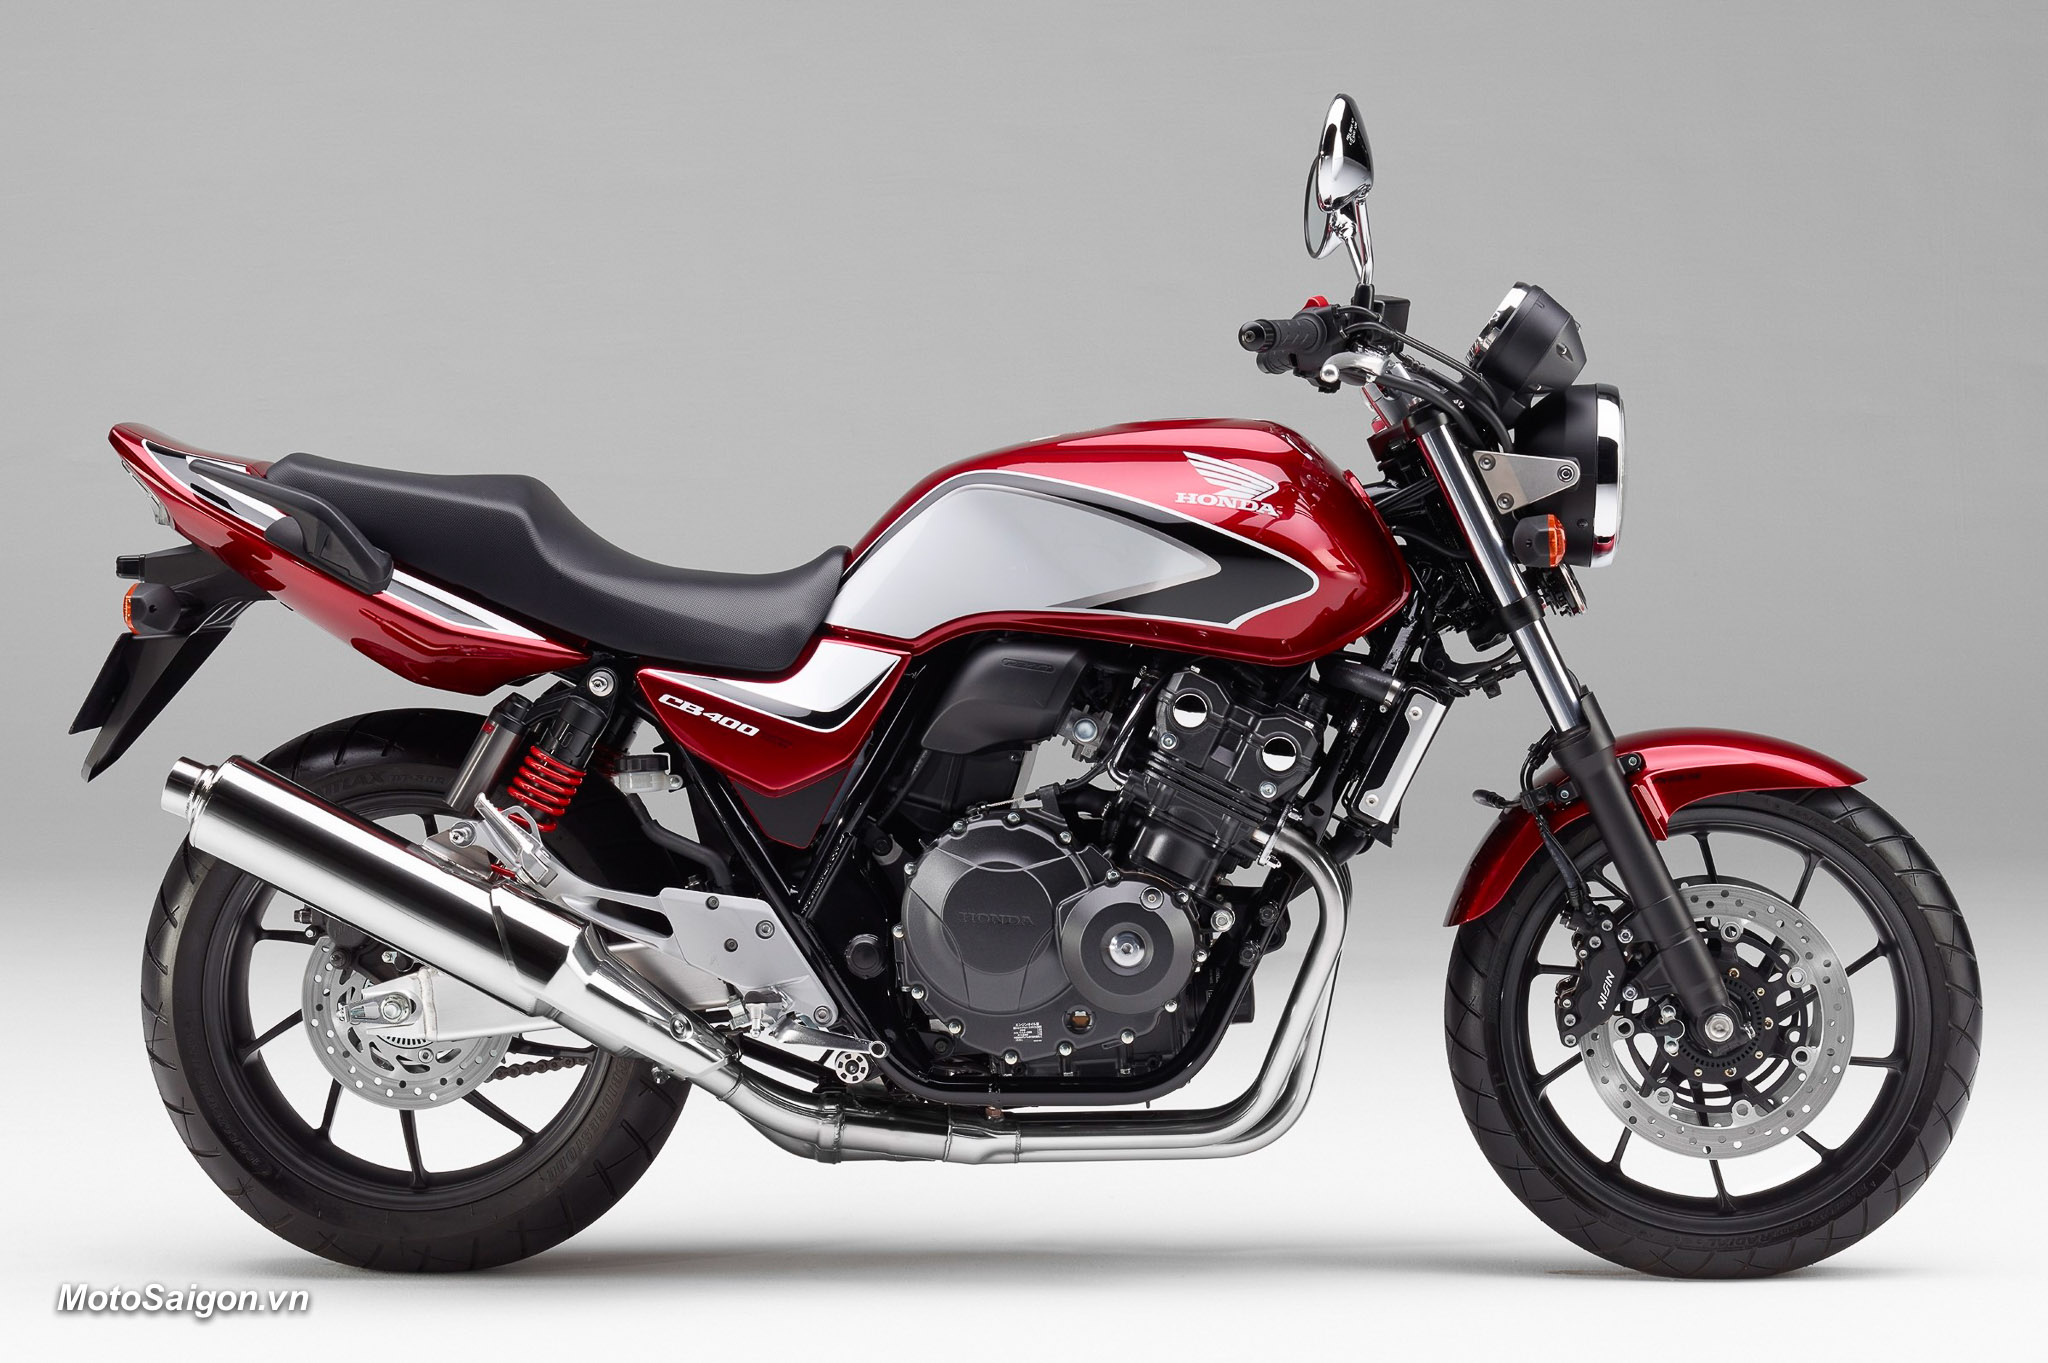 Tượng đài Honda CB400 sẽ được nâng cấp về động cơ trong phiên bản 2018